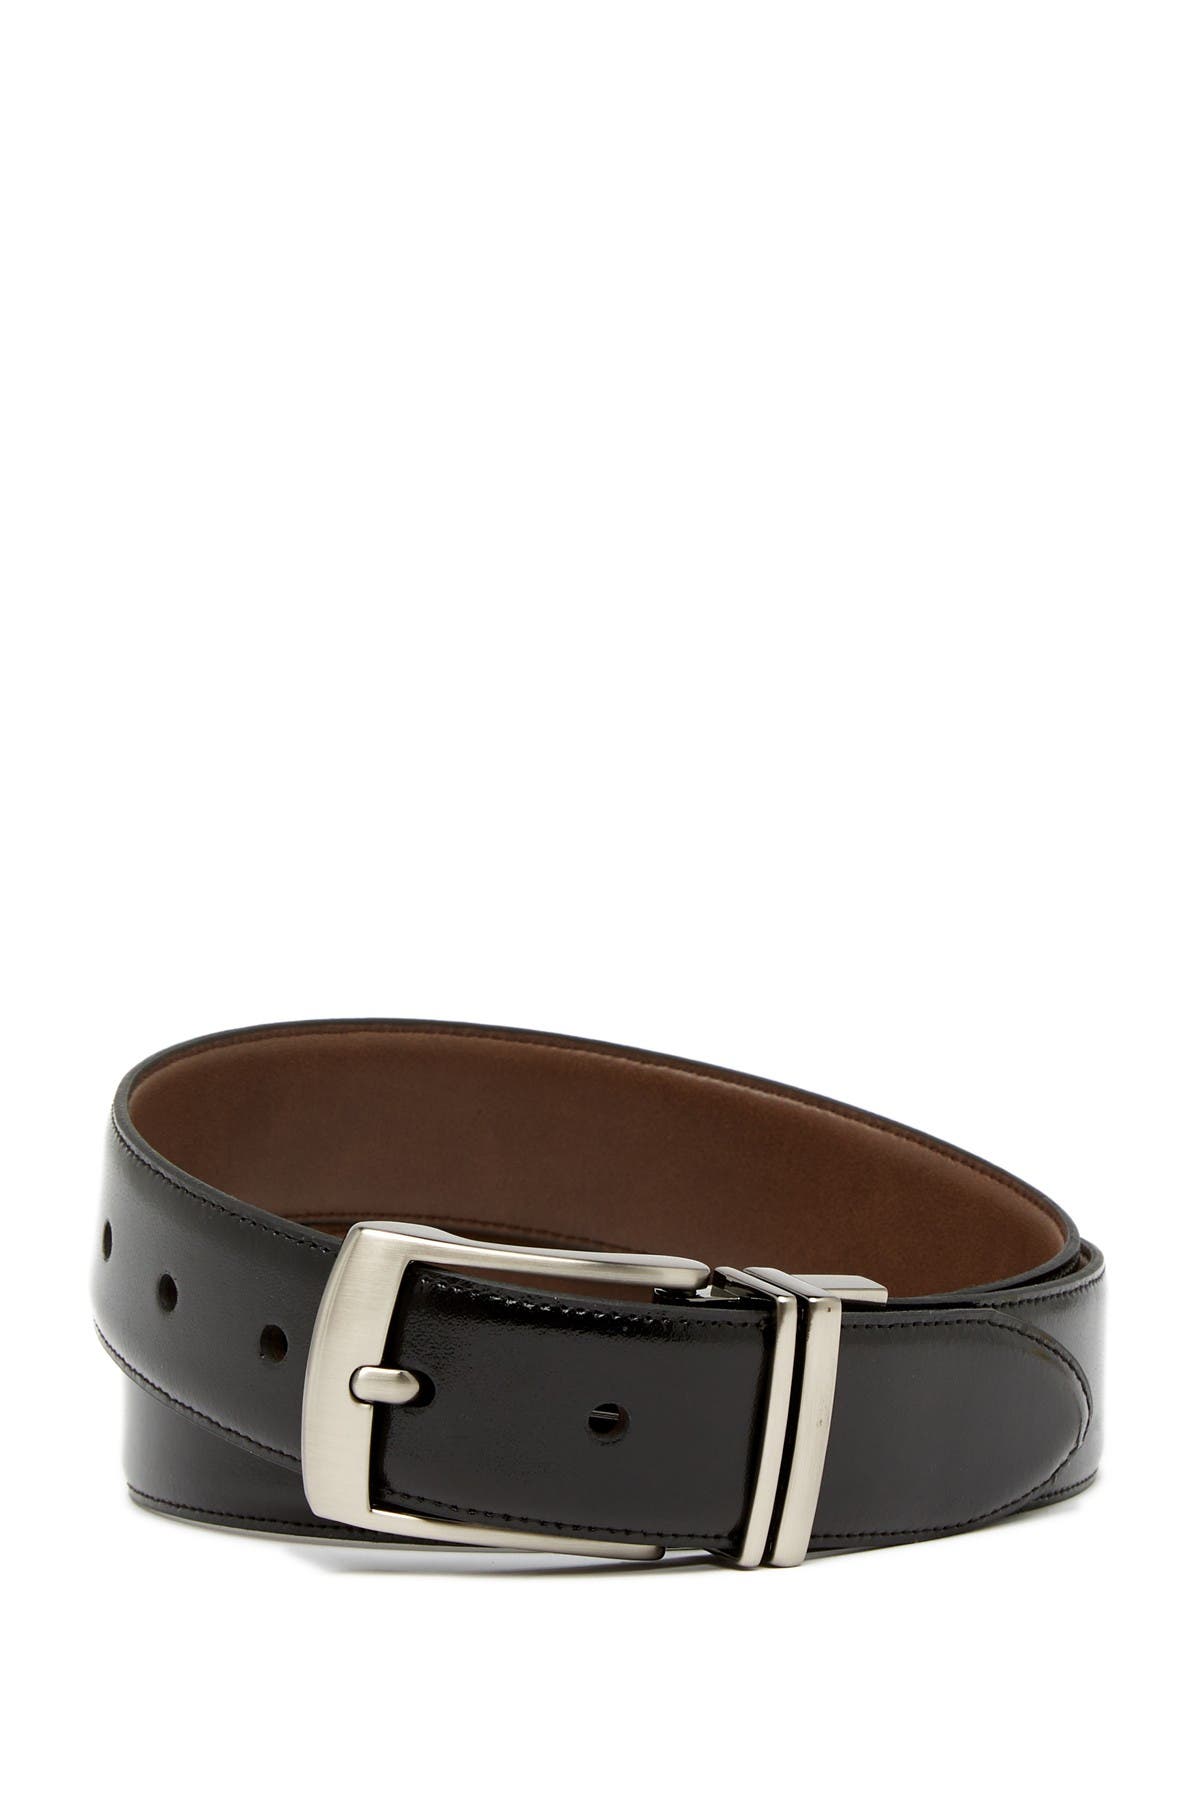 Boconi Reversible Leather Belt In Blk/brn